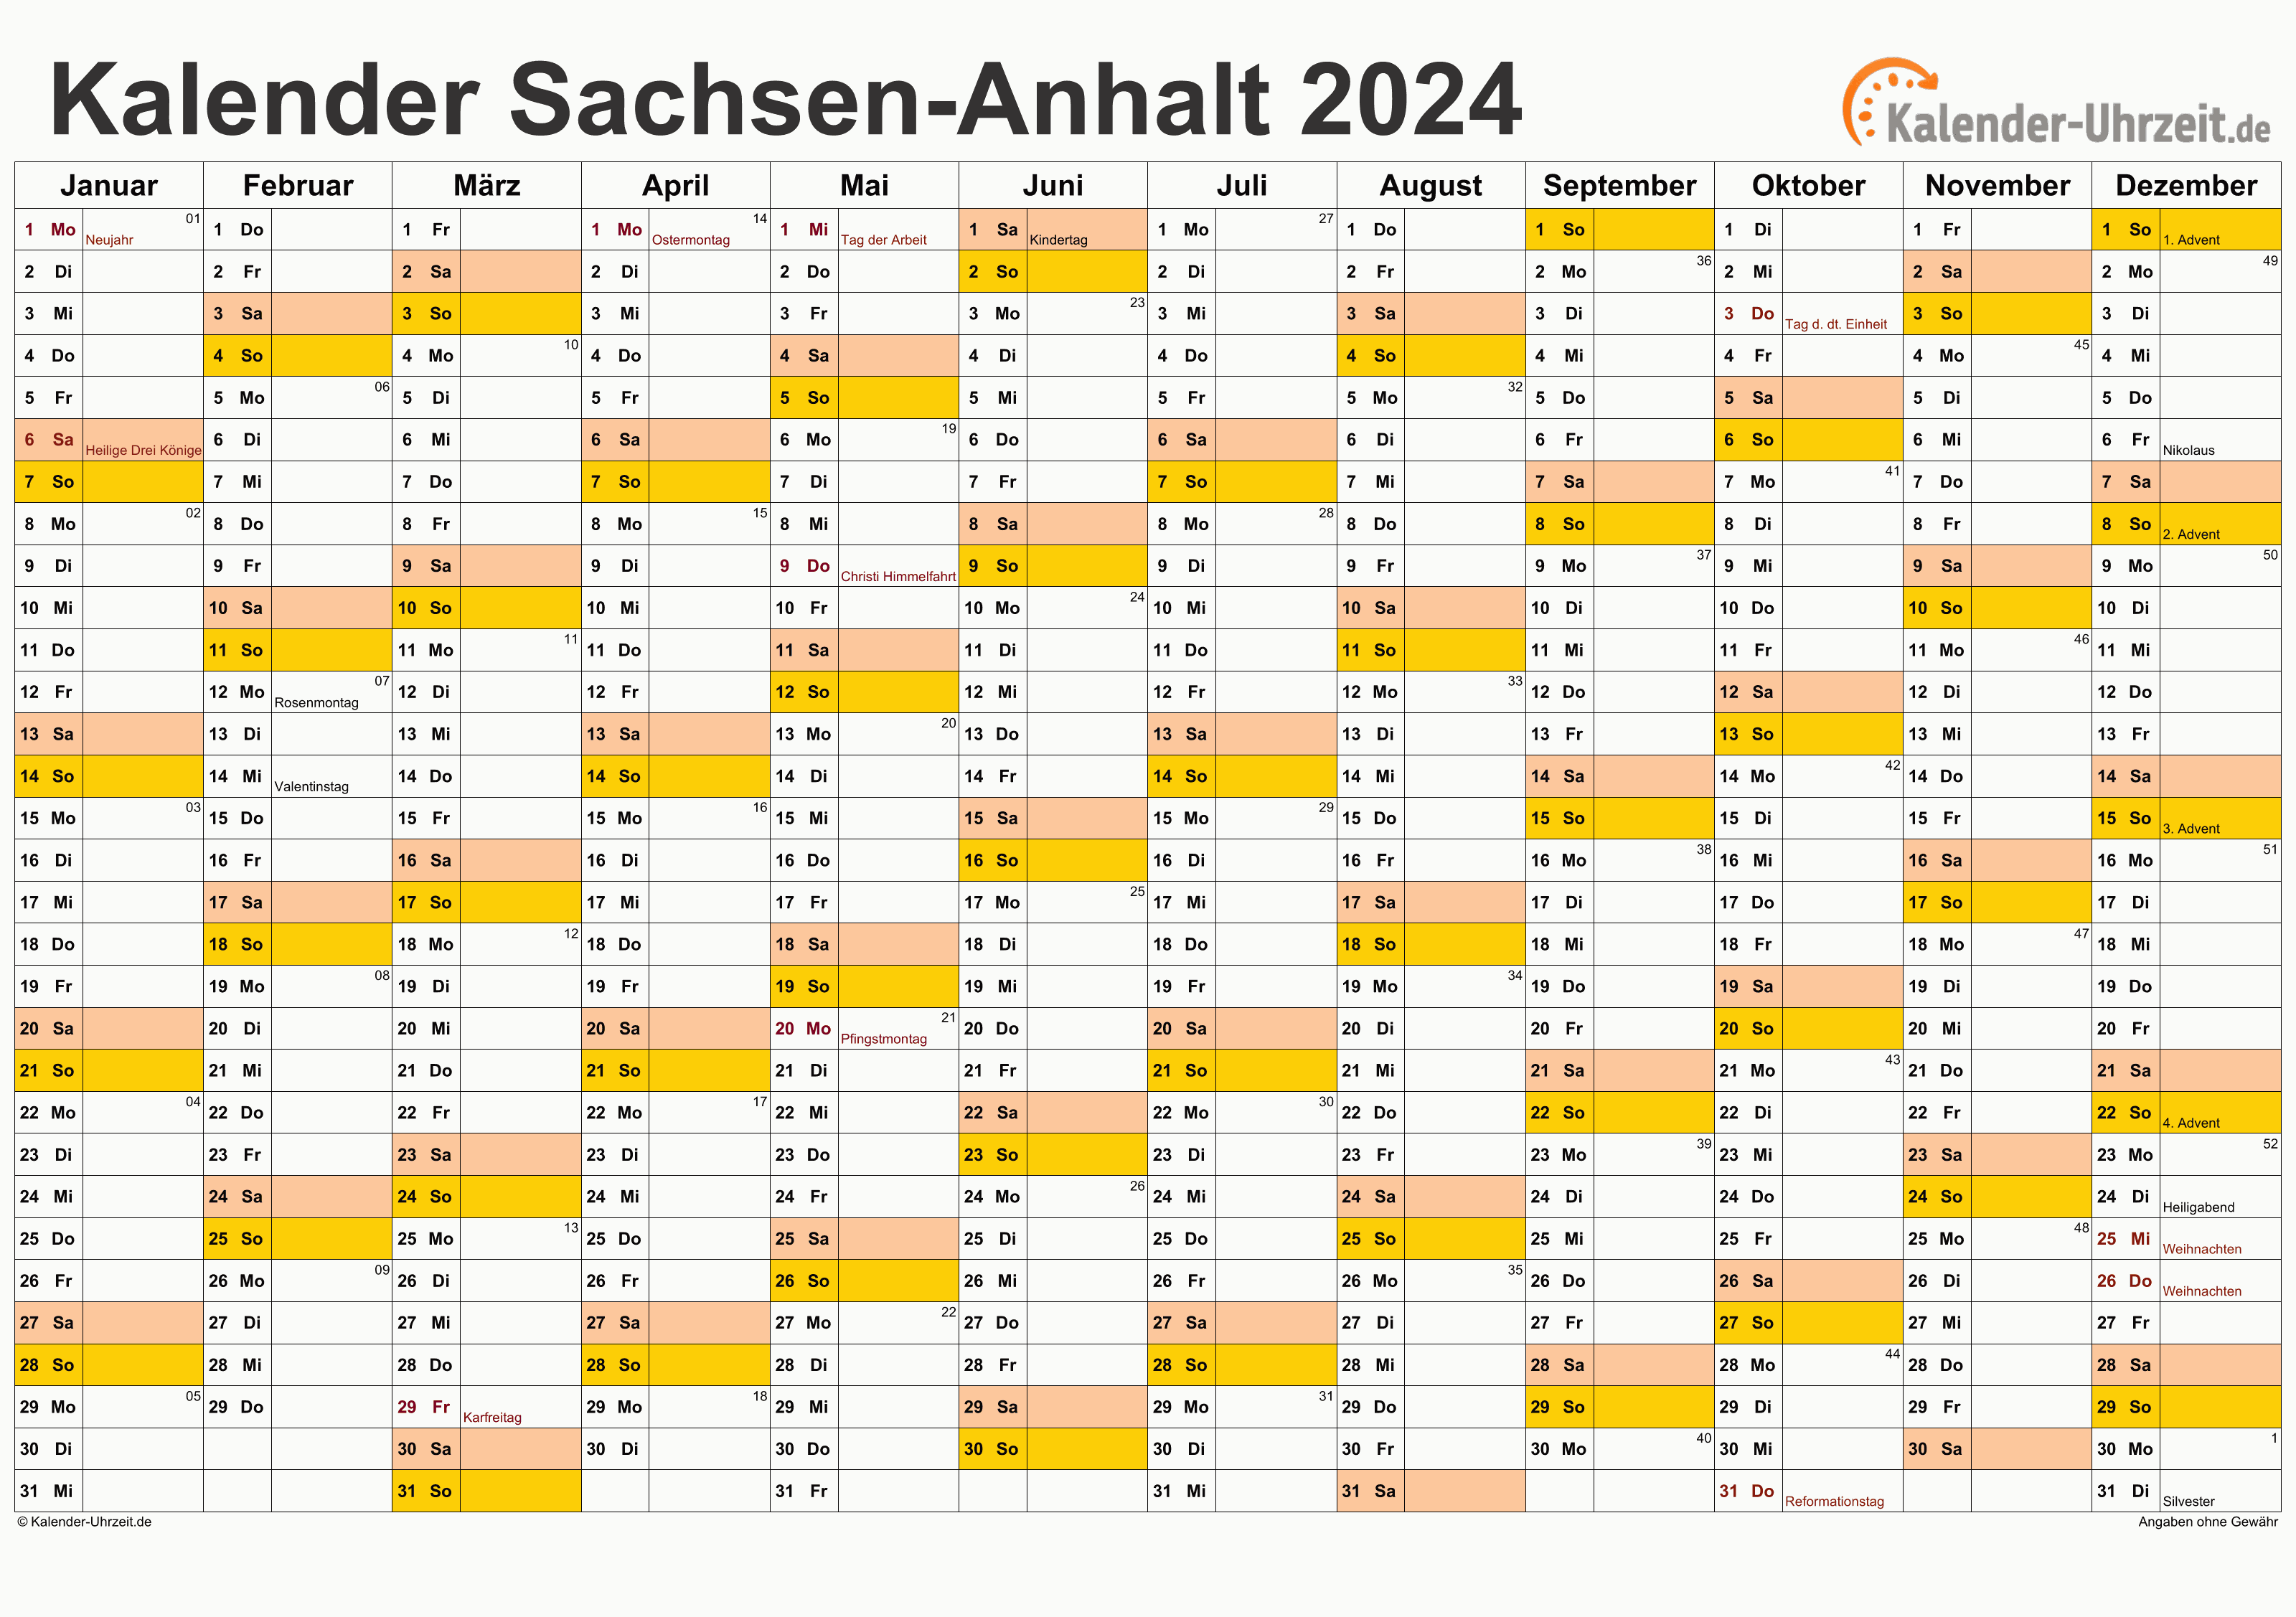 Sachsen-Anhalt Kalender 2024 mit Feiertagen - quer-einseitig